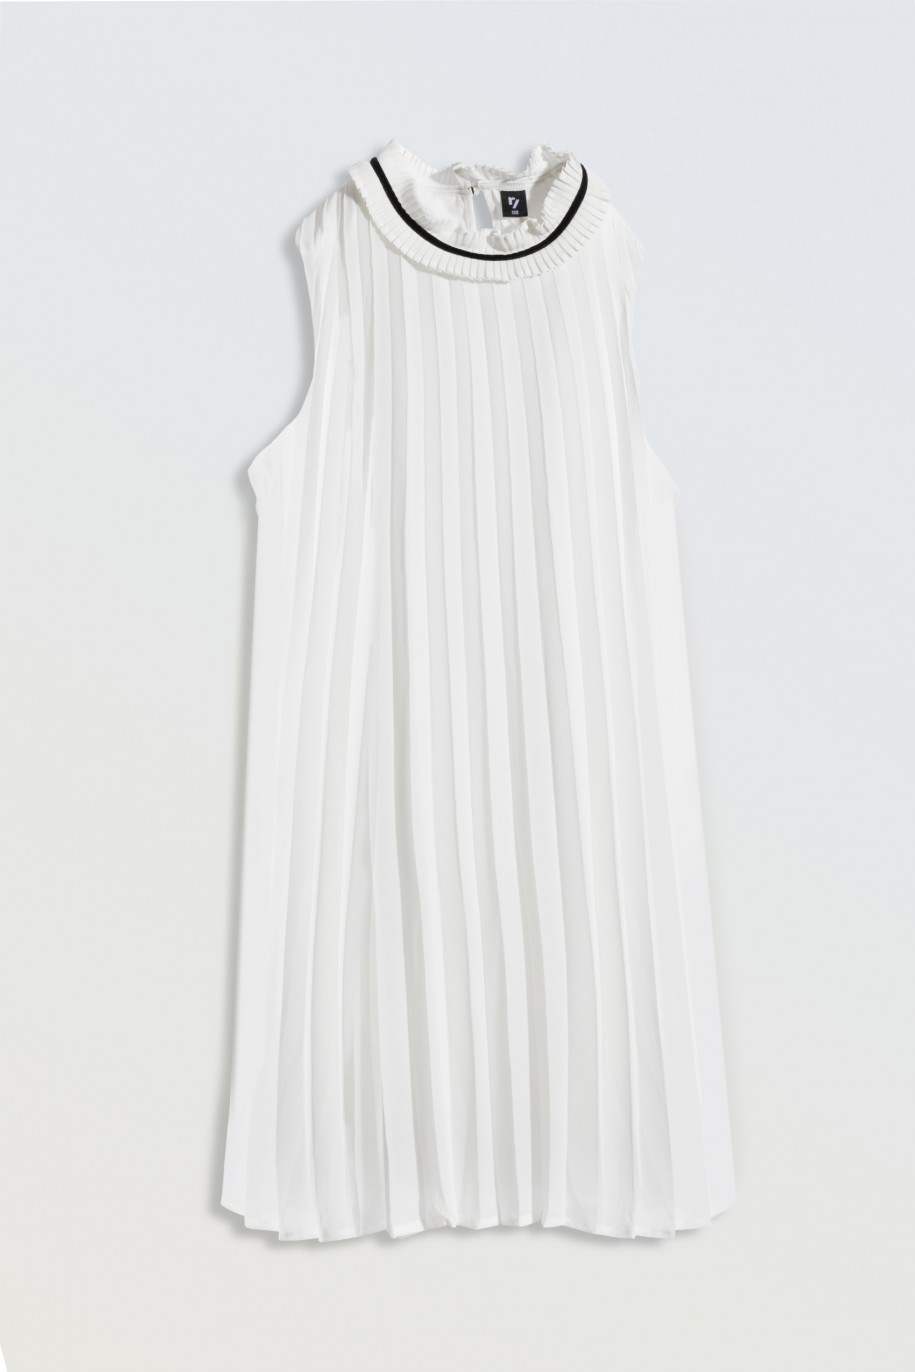 Biała sukienka plisowana z ozdobnym dekoltem - 46473